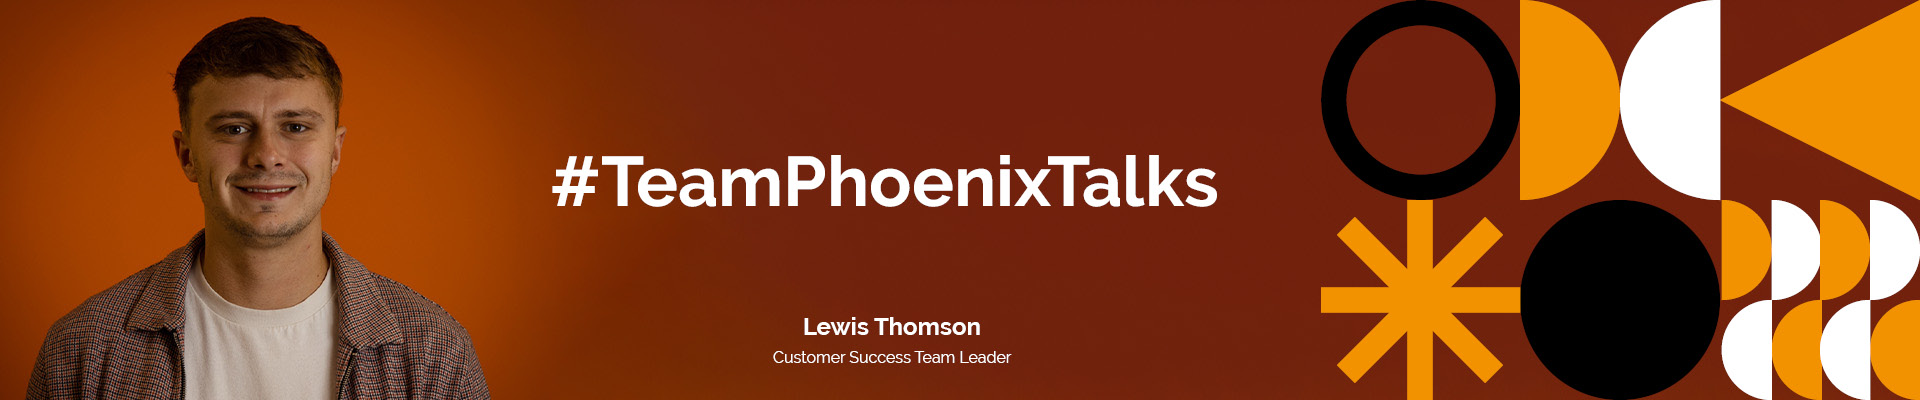 Team Phoenix Talks: Lewis Thomson